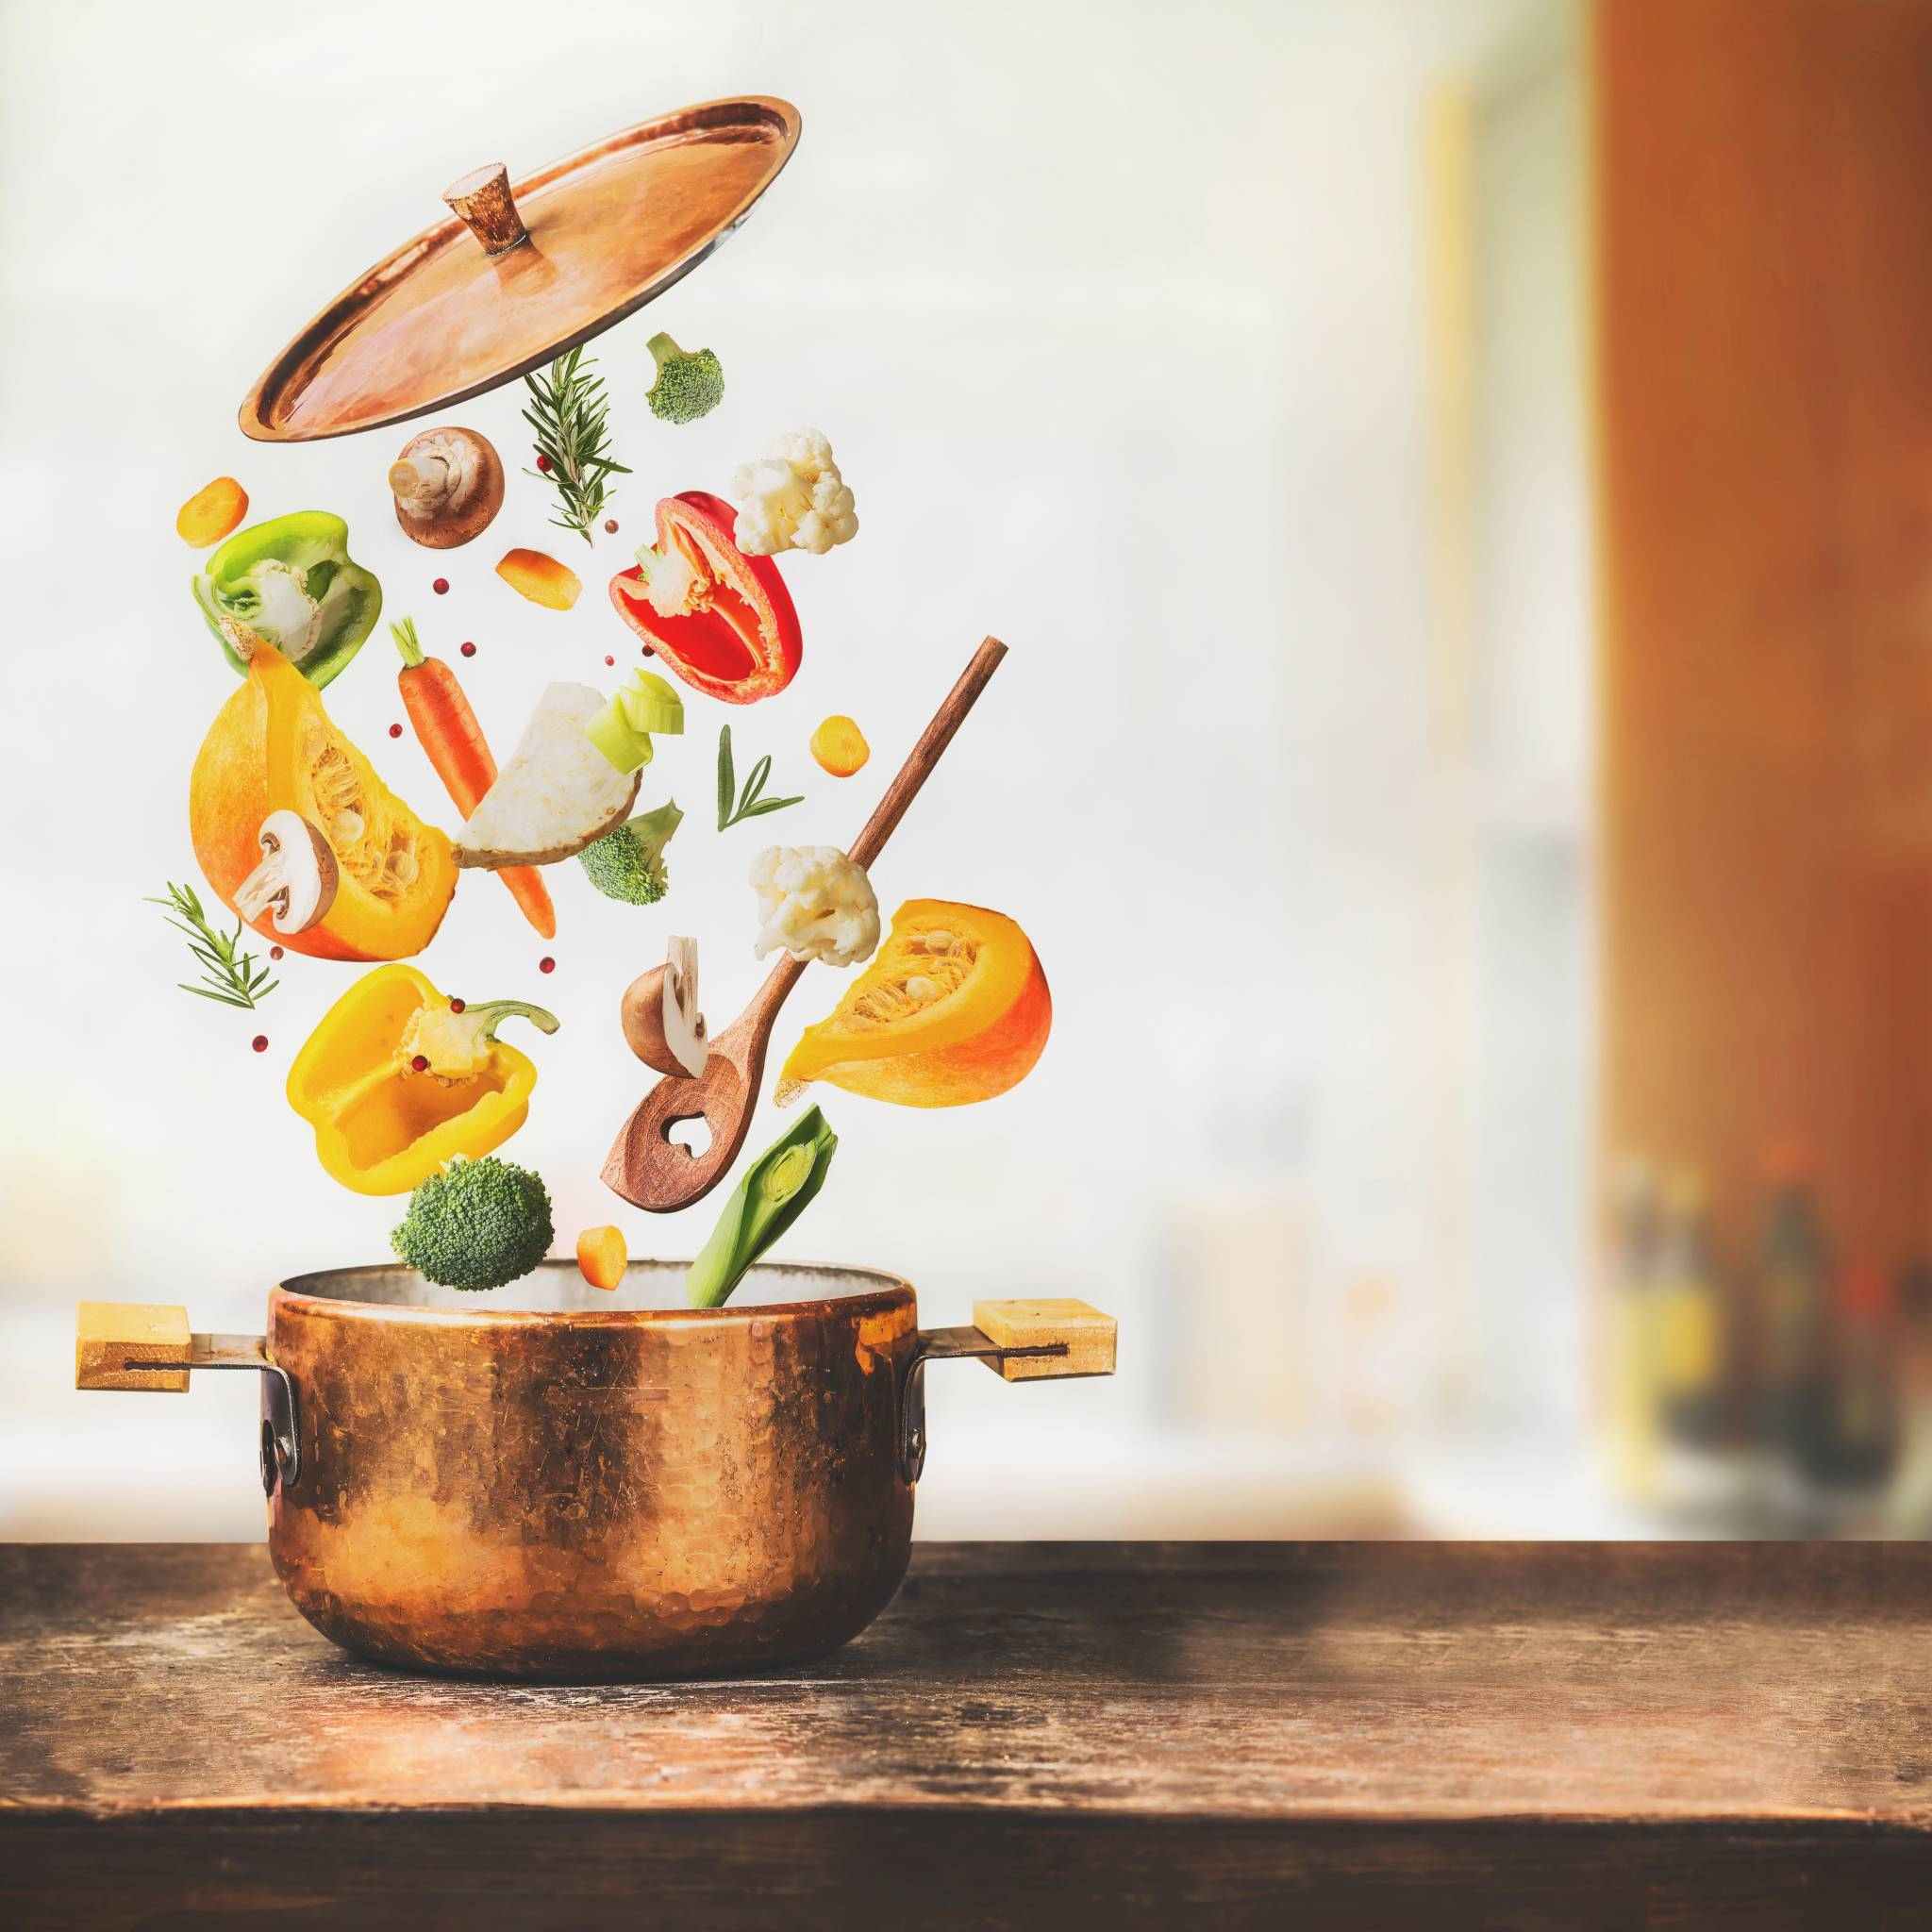 Hrnce a nádobí –  vývoj a vliv na připravované pokrmy a naše zdraví